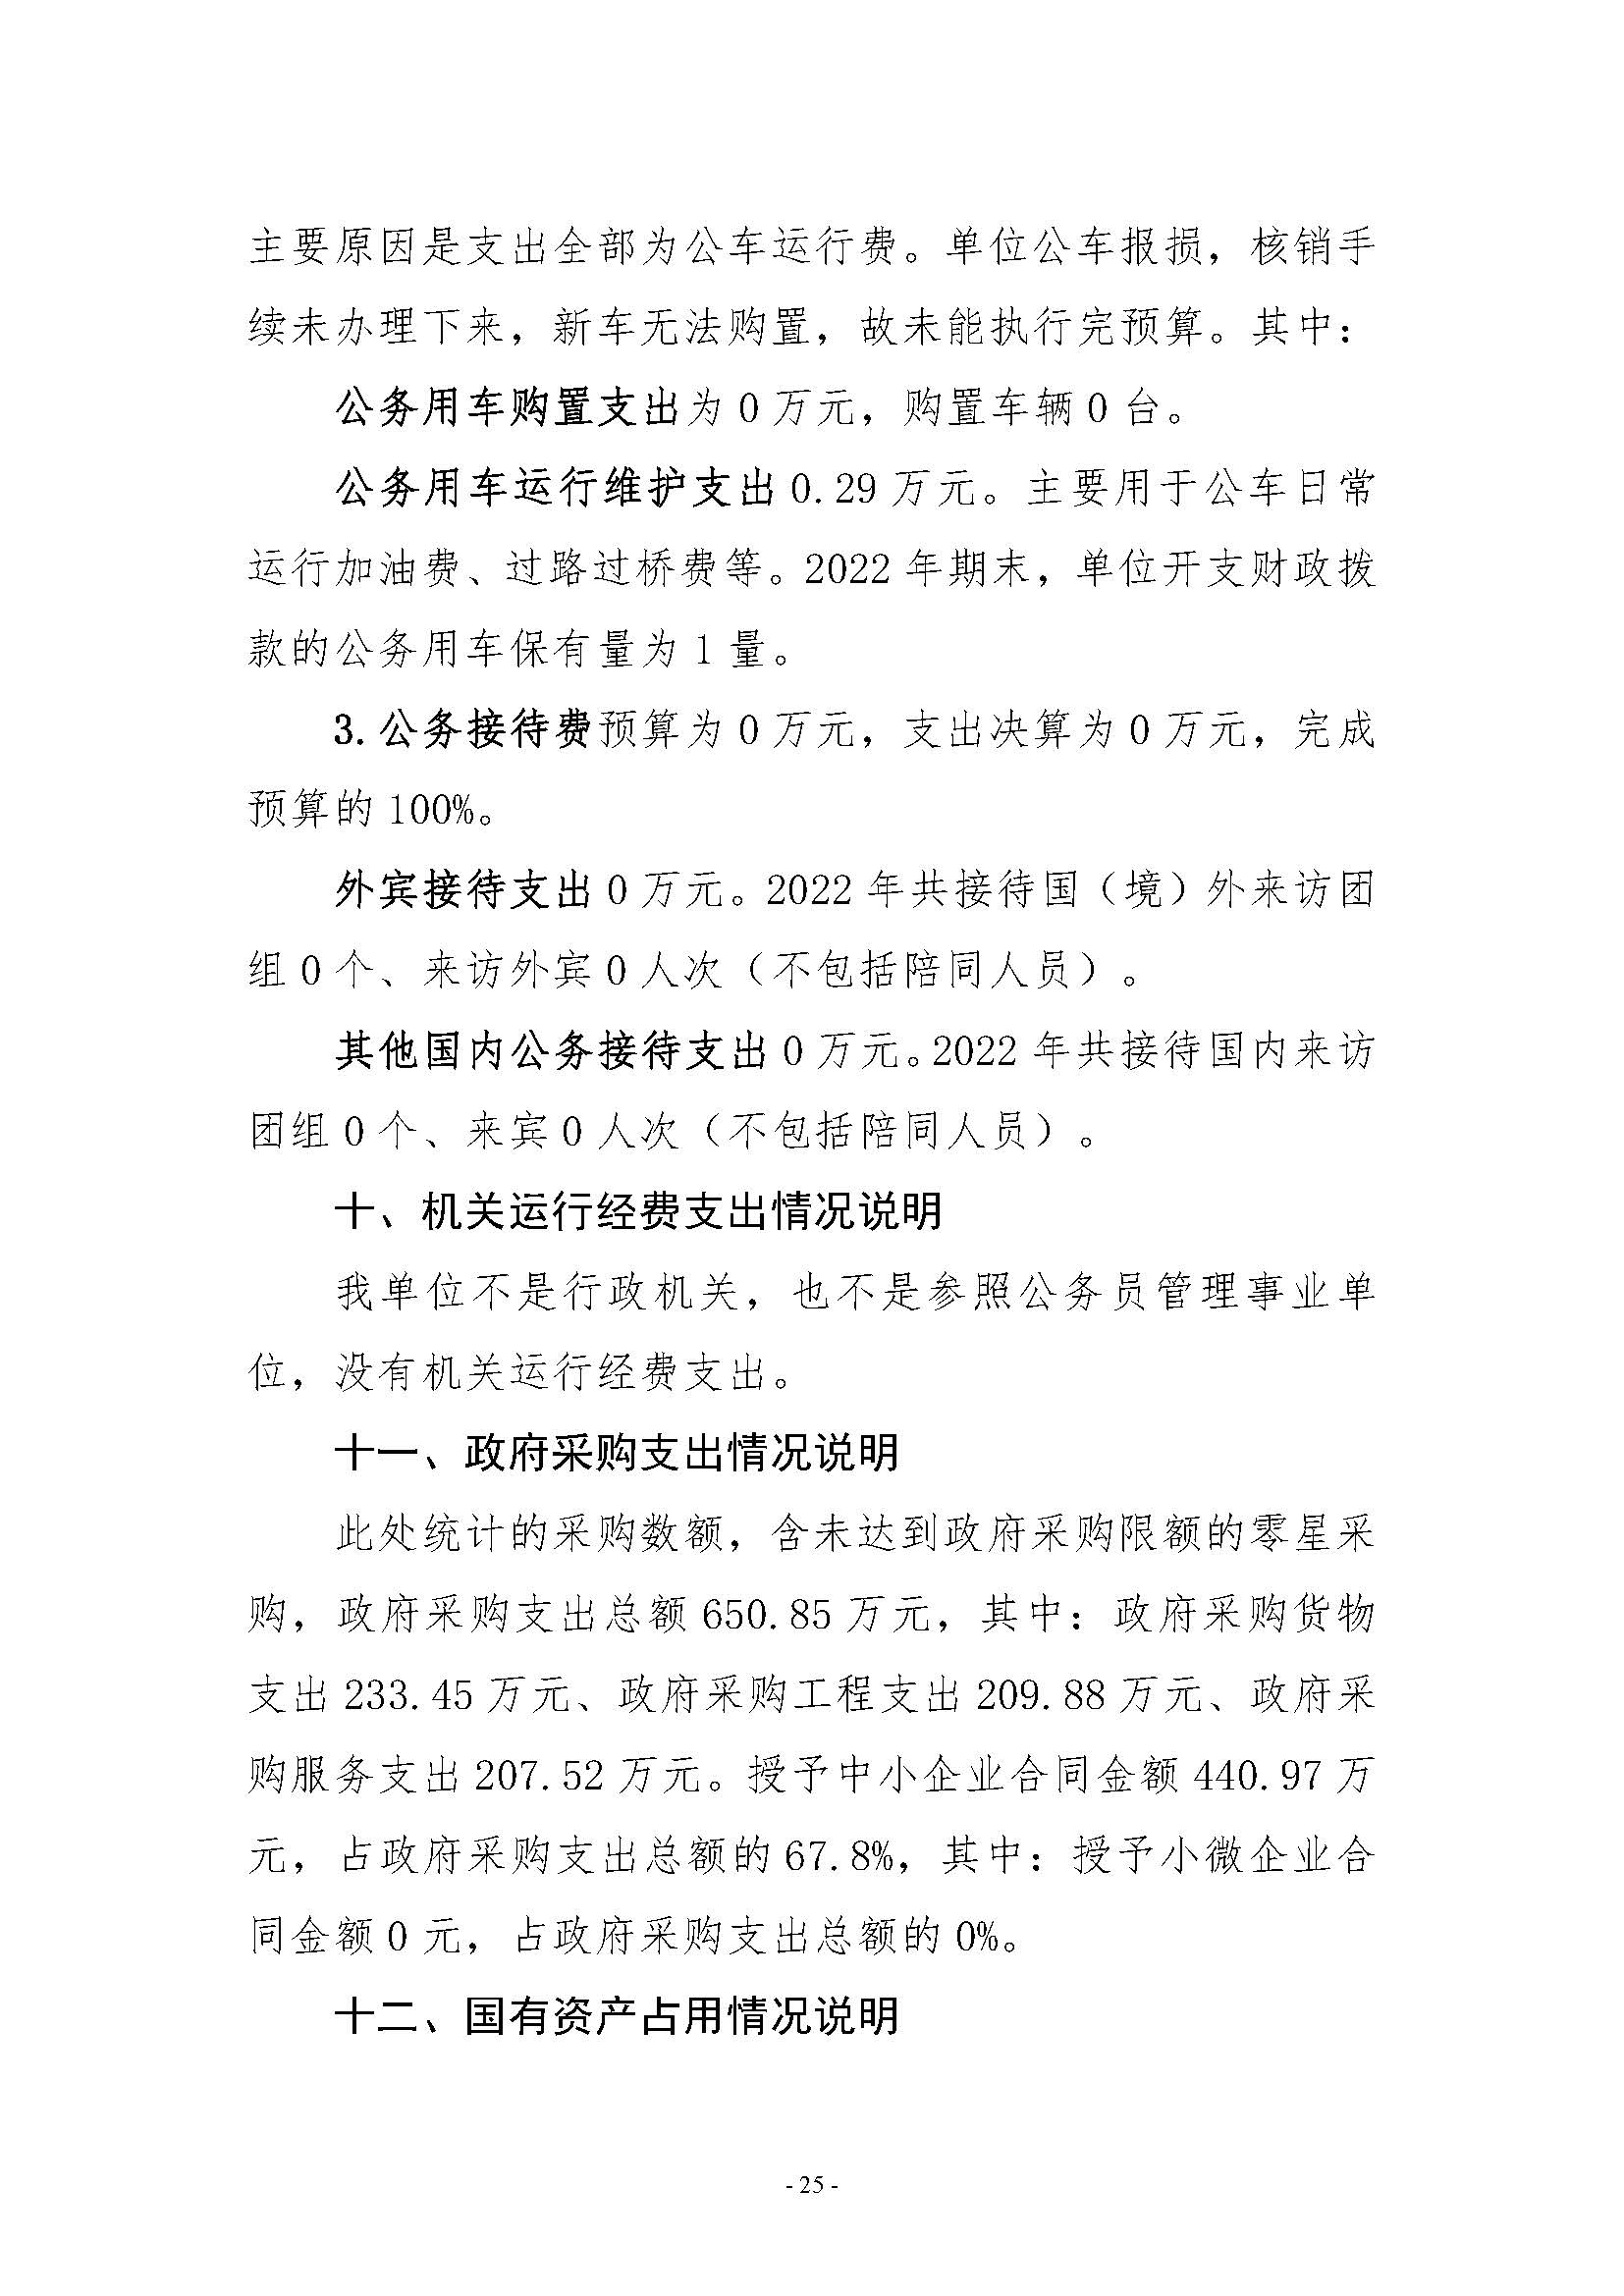 河南省水利科学研究院2022年年度省直部门决算公开(2)_页面_25.jpg